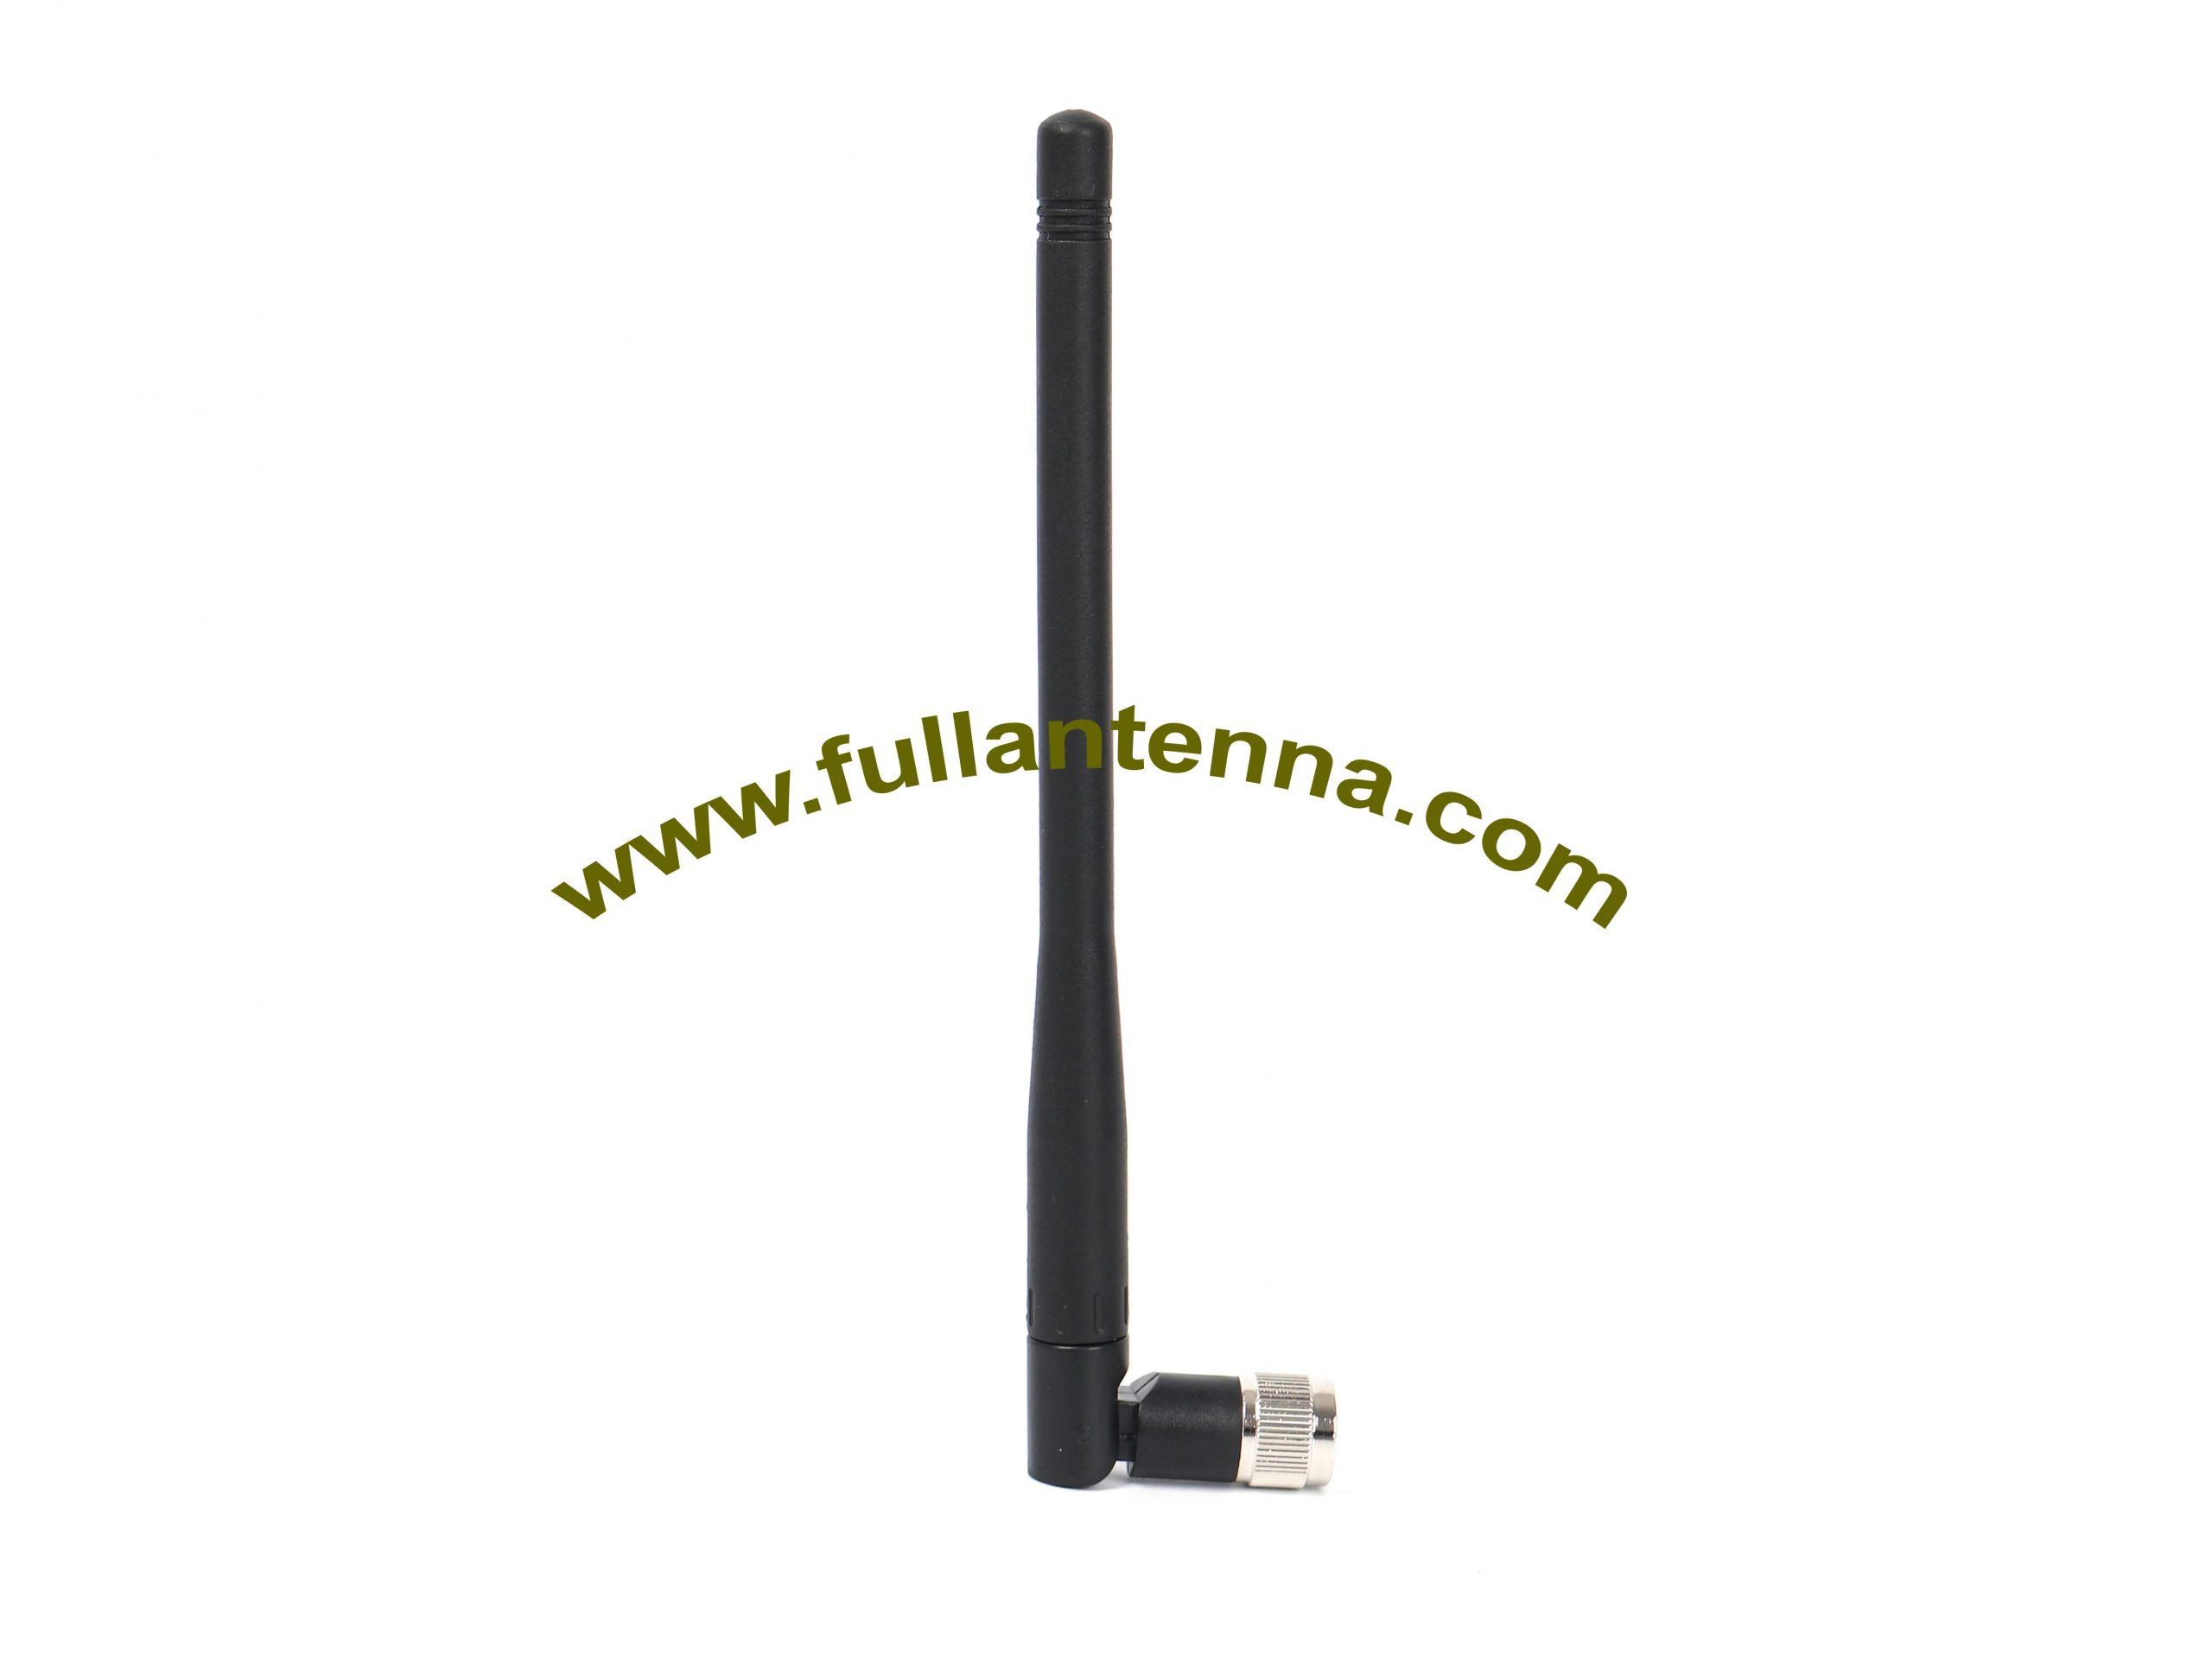 P / N: Antena de goma FALTE.0303,4G / LTE, 4G LTE Venta caliente aérea SMA rotación macho 3dbi Ganancia